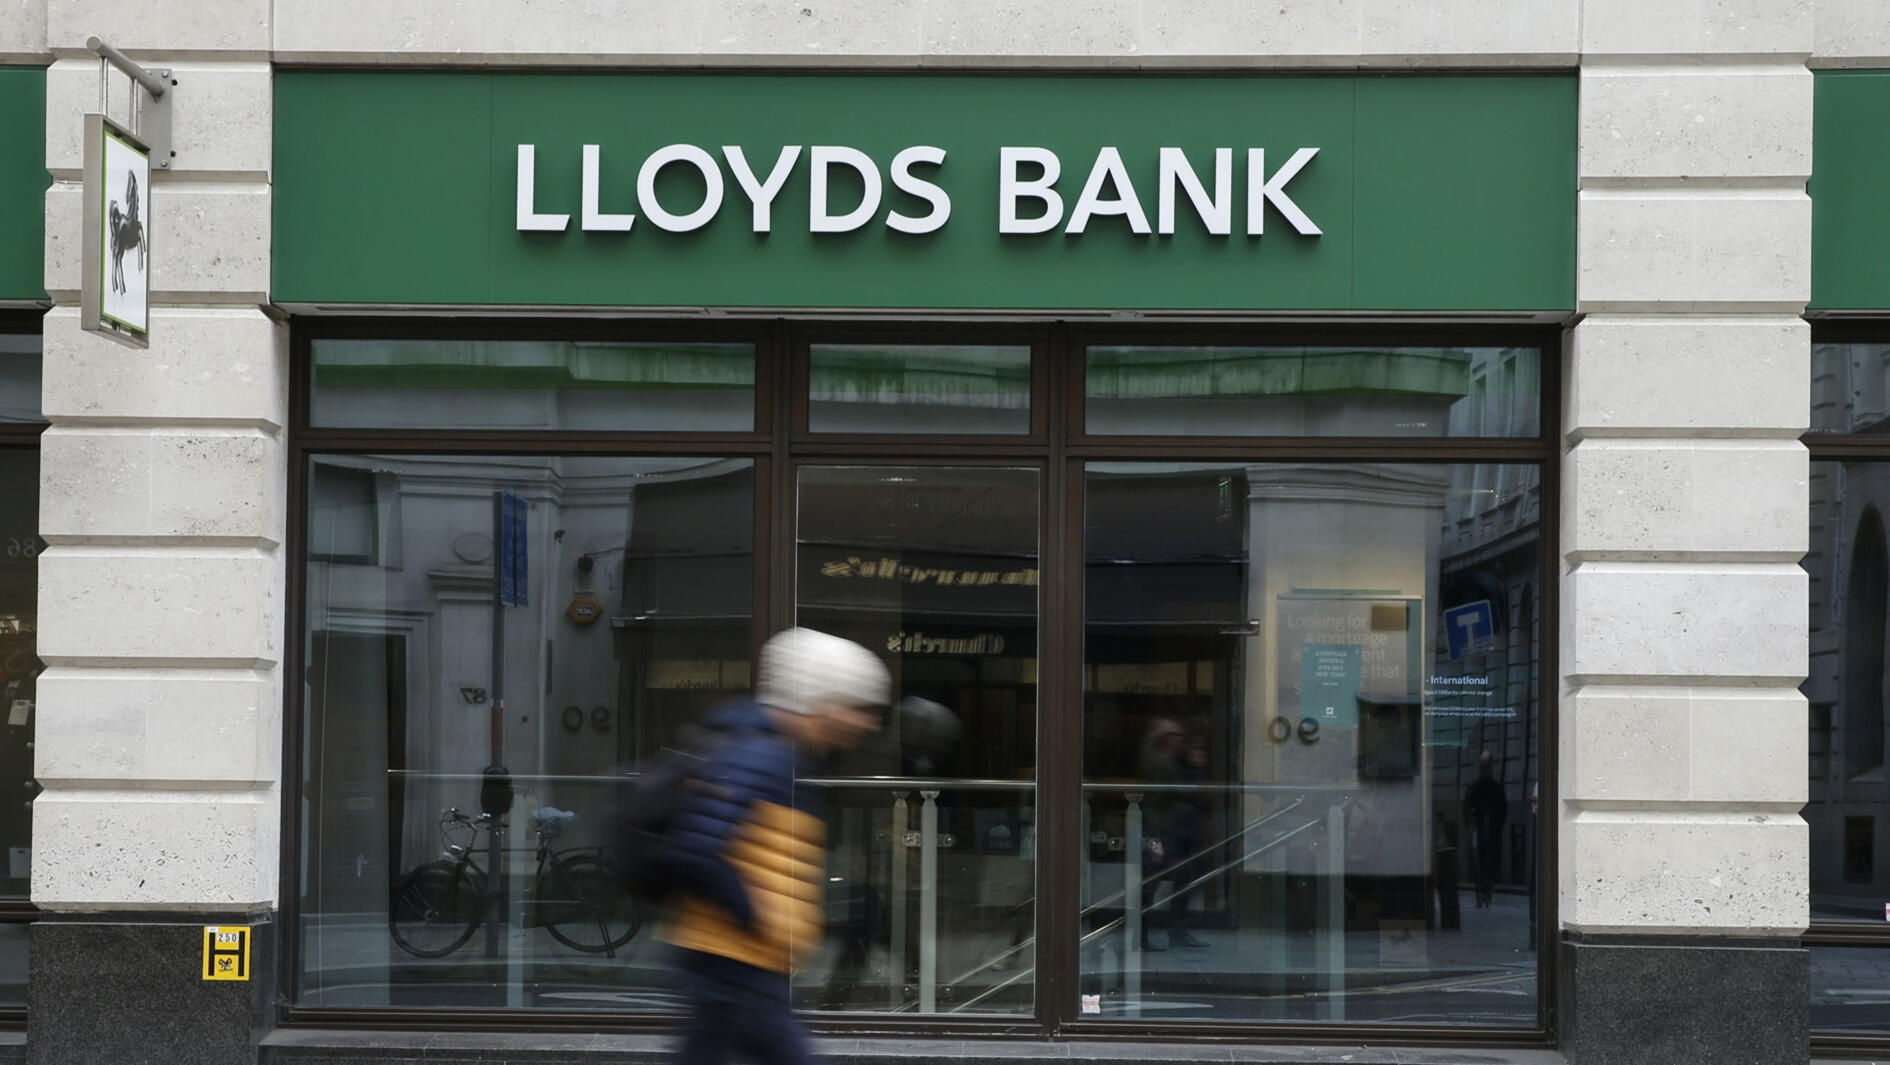 Lloyds Bank לוידס בנק בריטניה 1